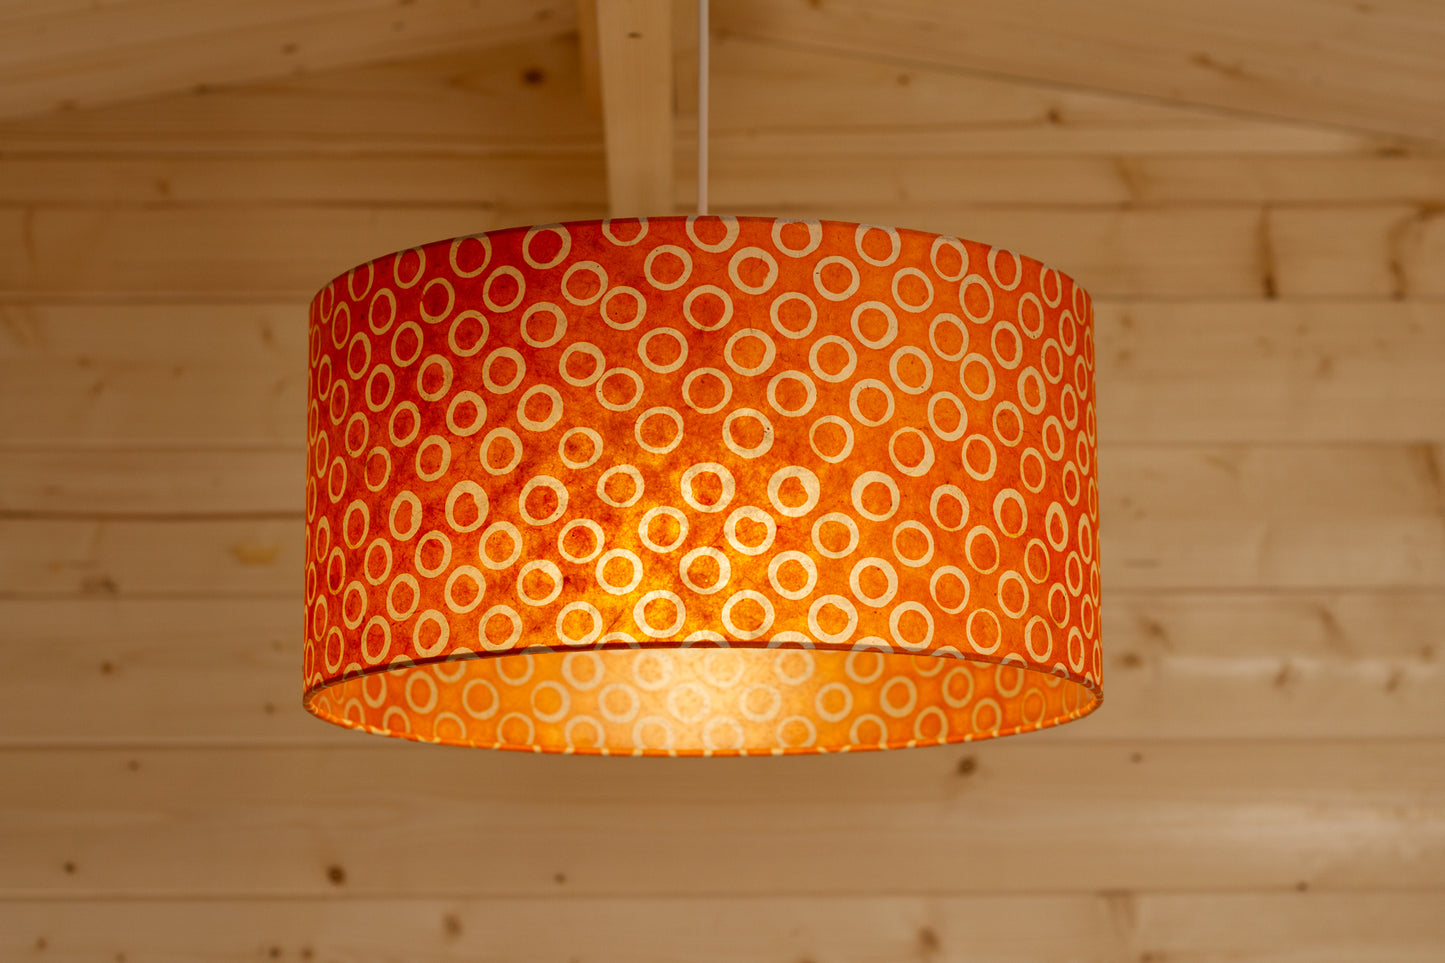 Drum Lamp Shade - P03 - Batik Orange Circles, 40cm(d) x 20cm(h)